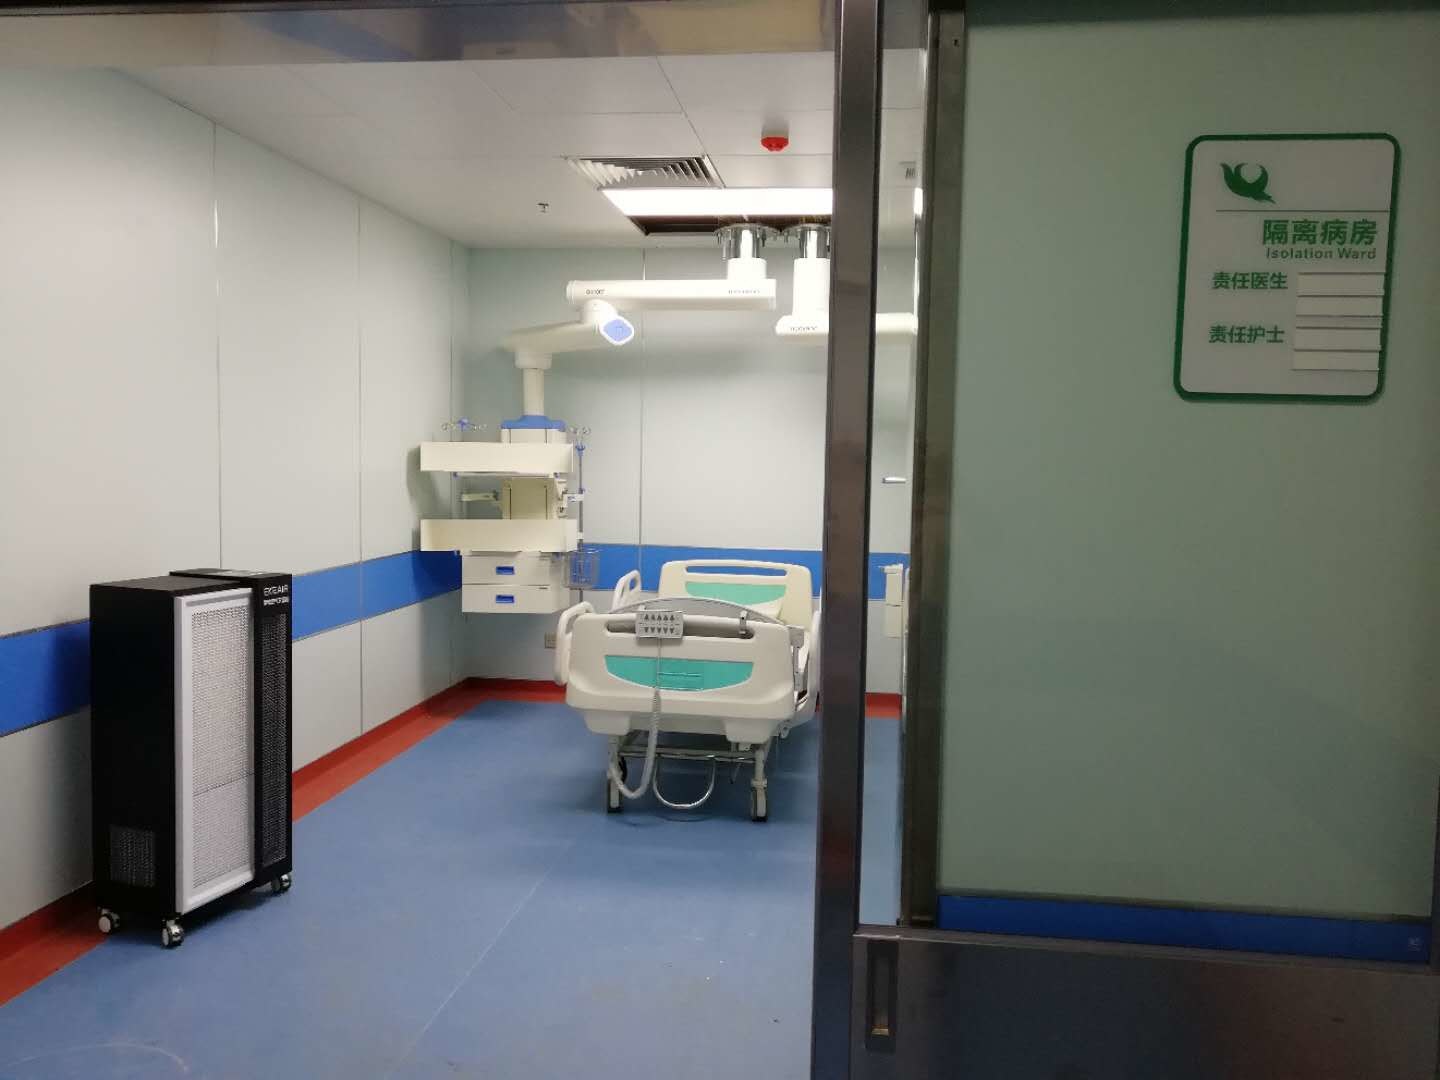 último caso de la compañía sobre Nuevo campus, cuarto hospital de la universidad médica de Anhui